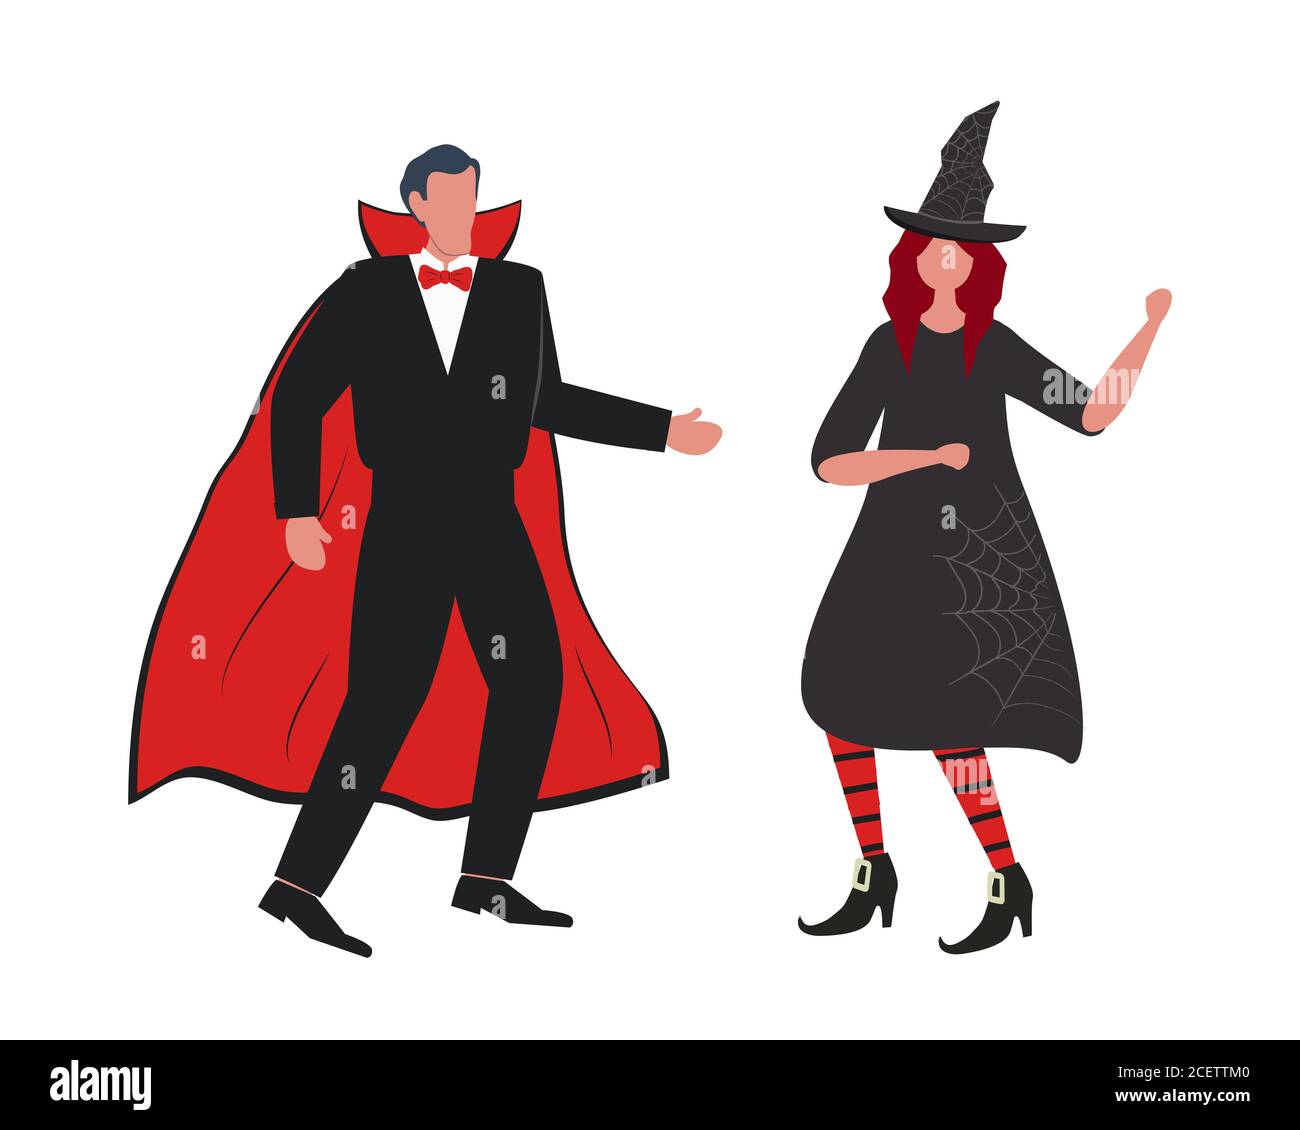 Festa di Halloween. La gente nei costumi di Halloween sta ballando ed avendo divertimento. Ci sono strega e vampiro nell'immagine. Illustrazione vettoriale Illustrazione Vettoriale